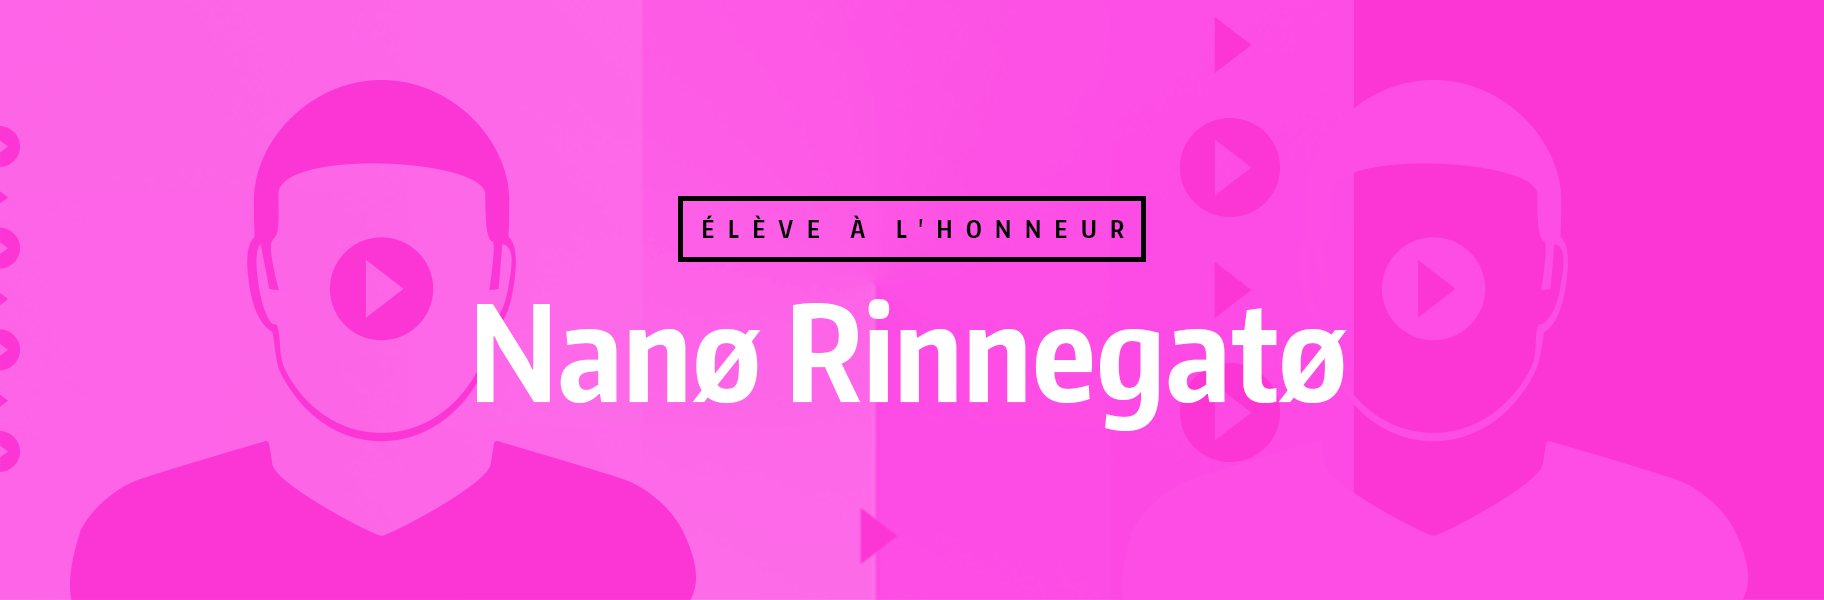 Élève à l'honneur - Nanø Rinnegatø